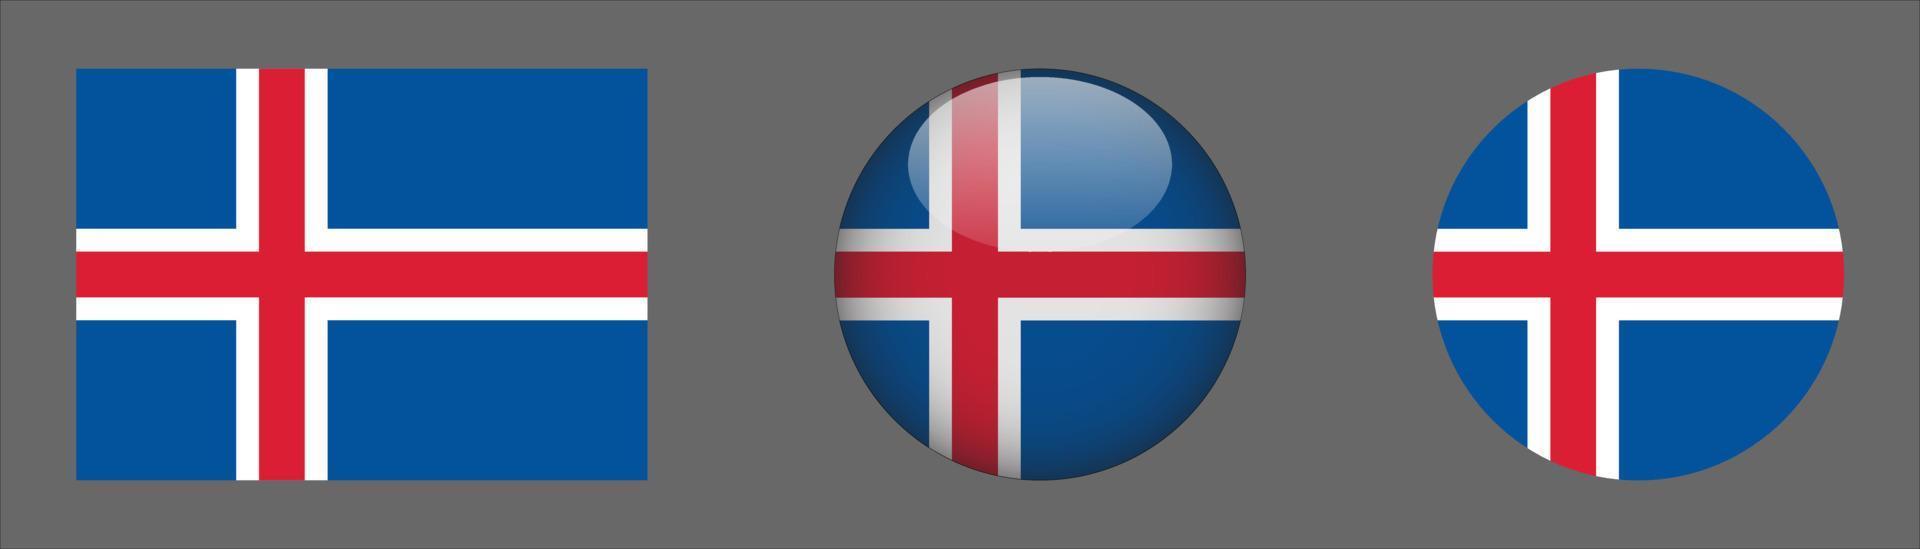 colección de conjunto de bandera de islandia, relación de tamaño original, redondeado 3d y redondeado plano vector